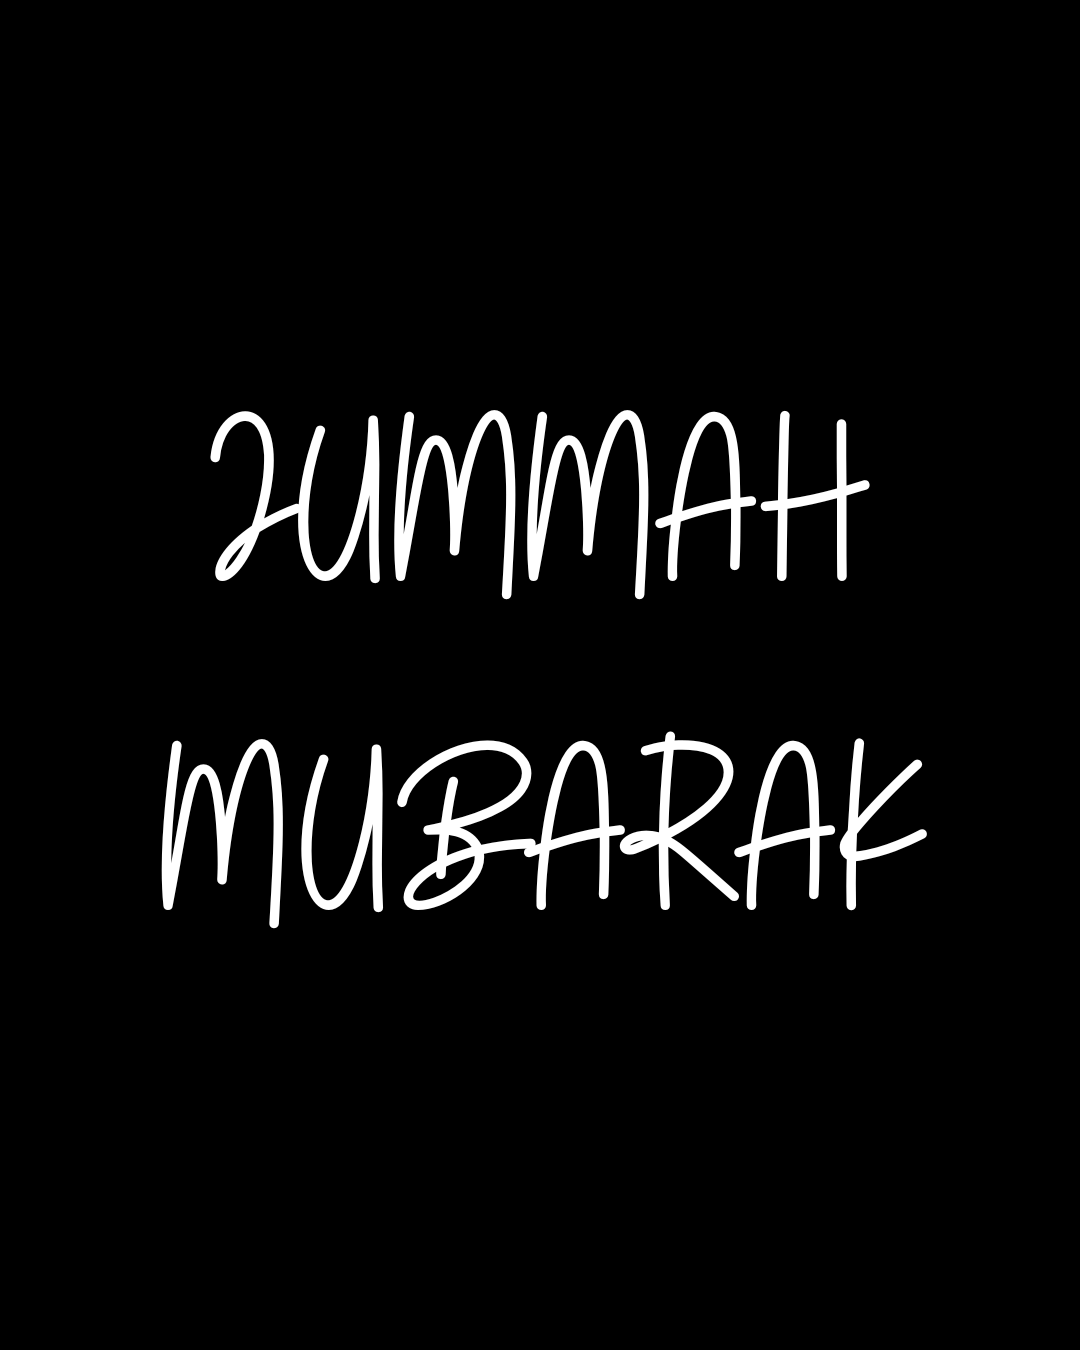 Jummah Mubarak! The blessed day of Jummah is here again